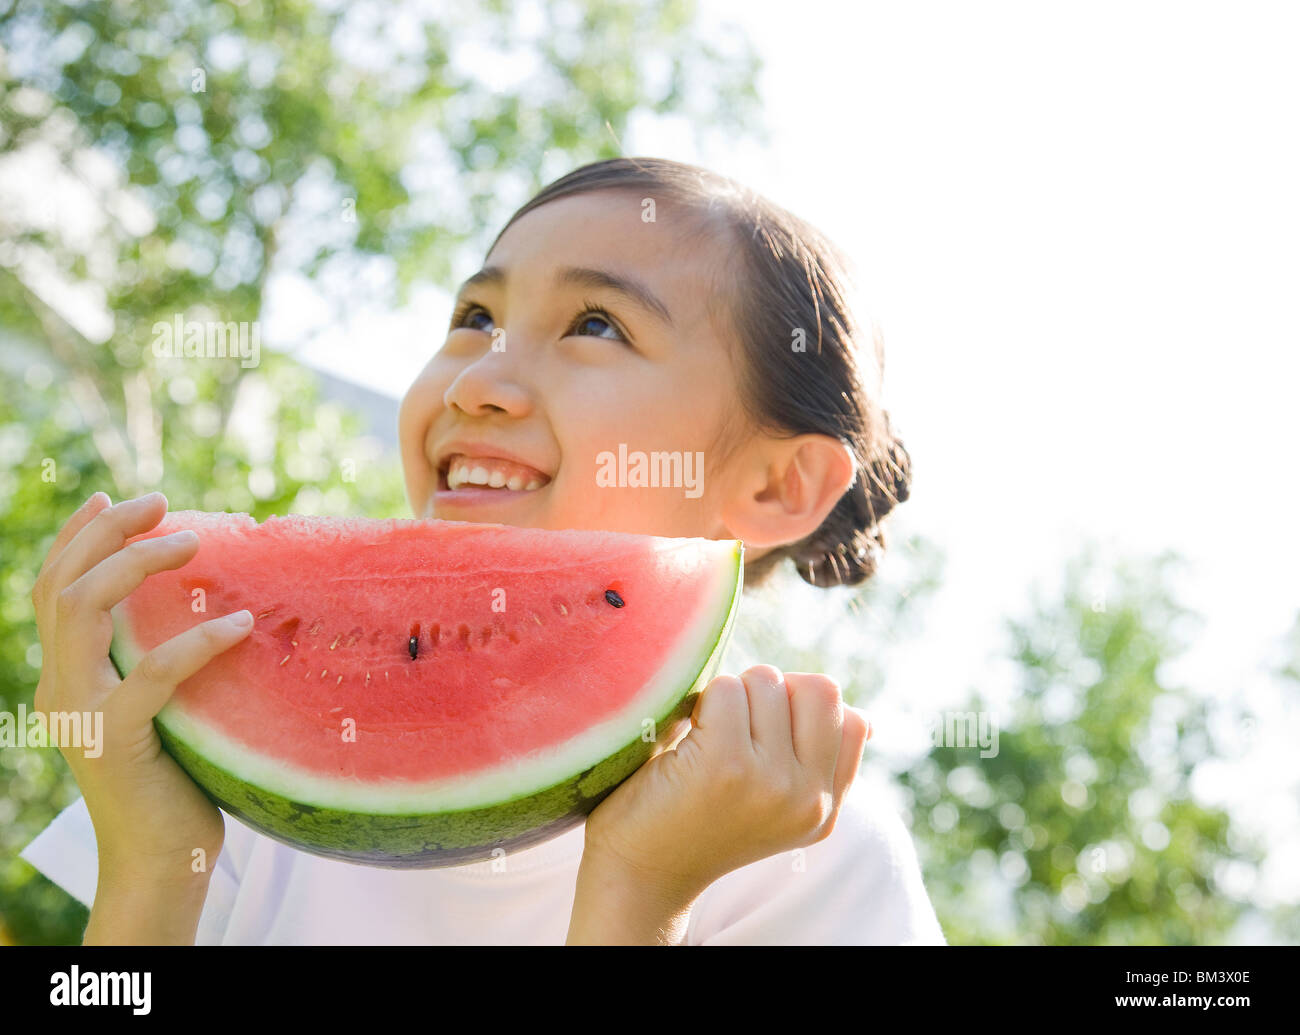 Smiling Girl Holding une tranche de melon d'eau Banque D'Images